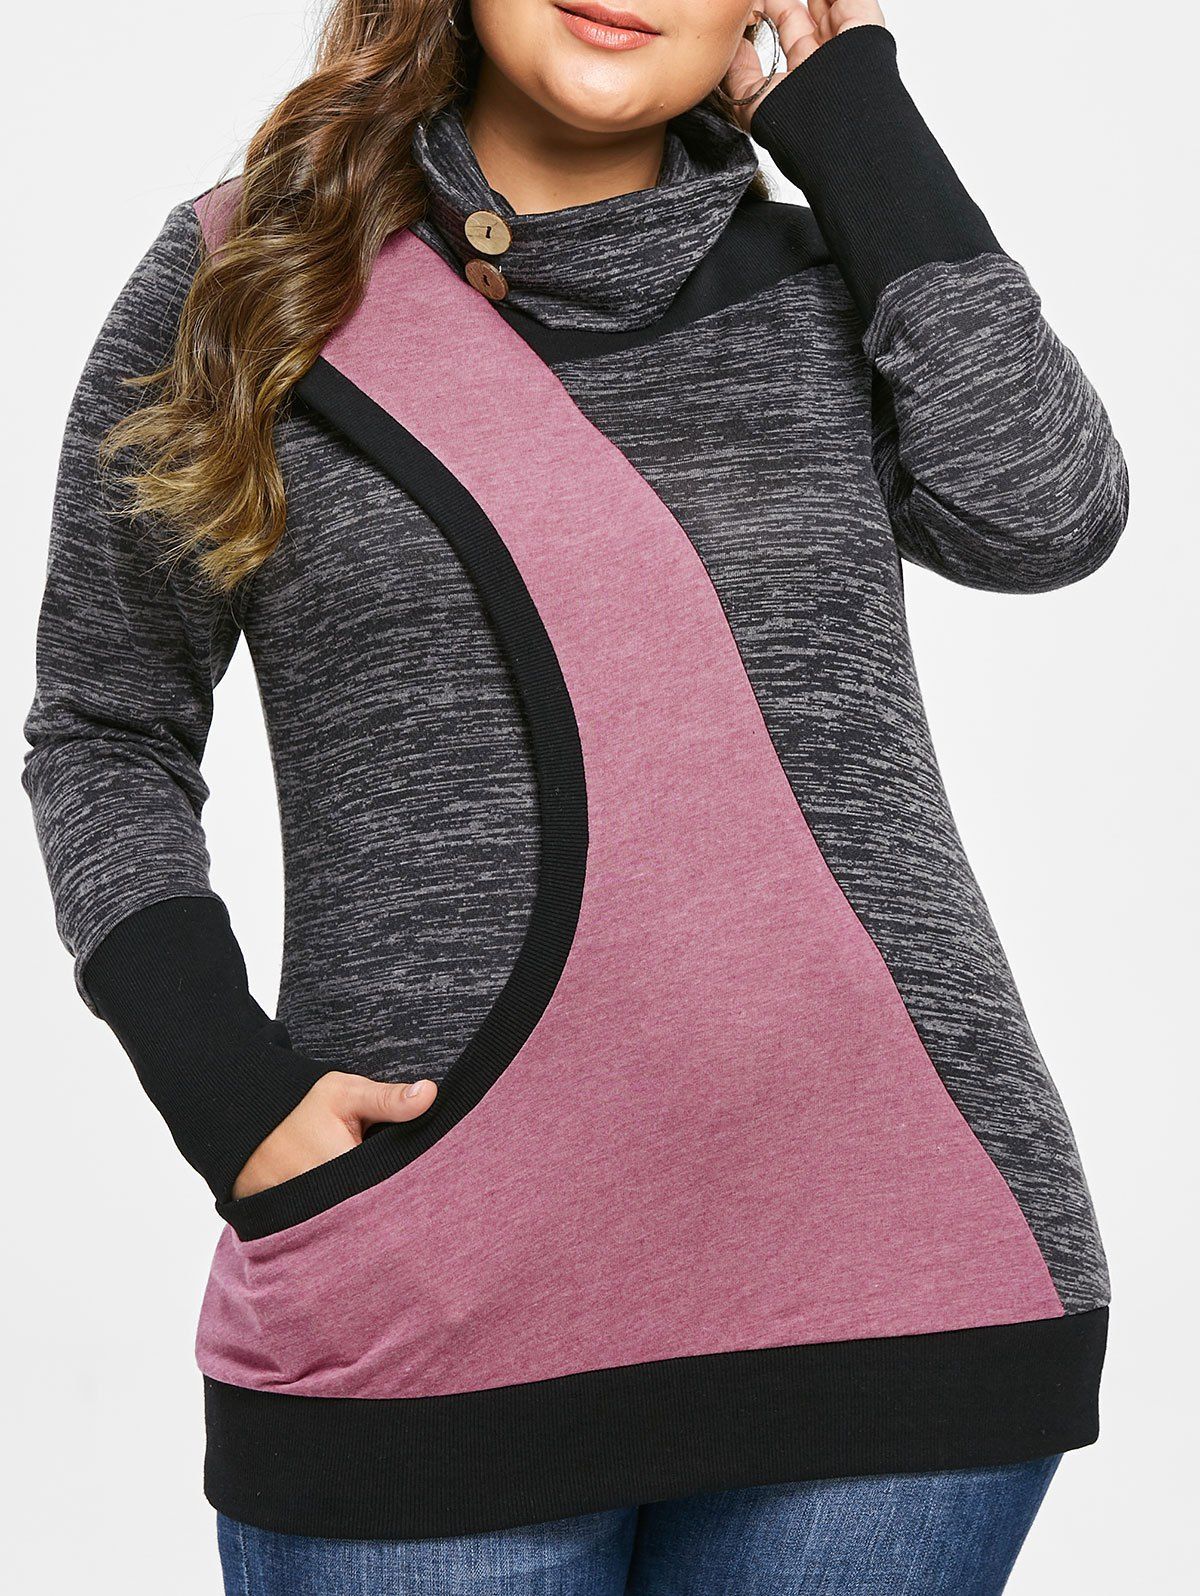 Plus Size Turtleneck Contrast Sweatshirt - multicolor L